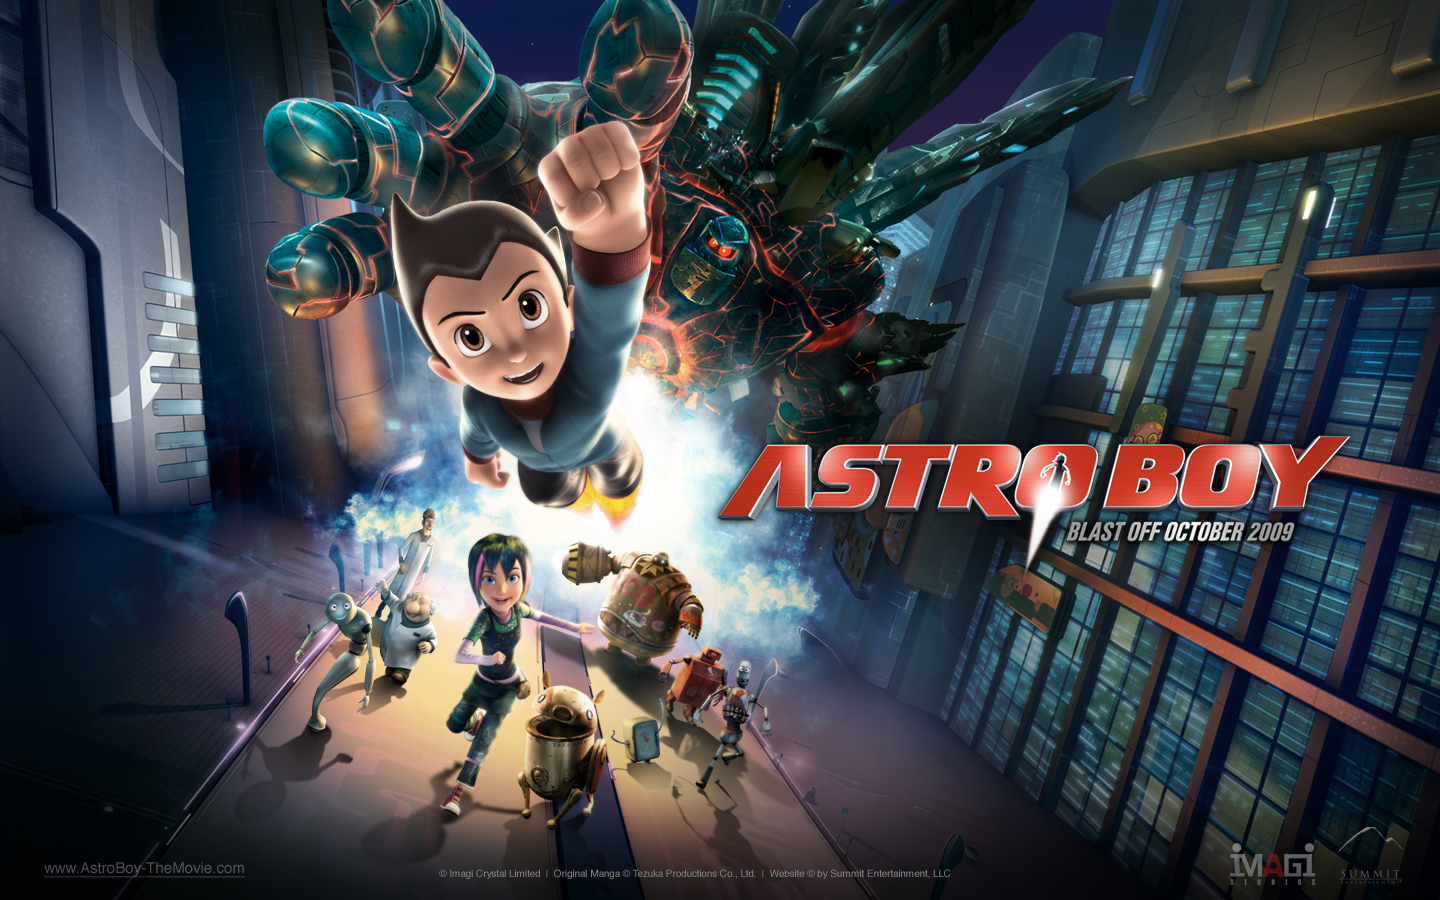 "Astro Boy Movie" desktop wallpaper (1440 x 900 pixels)